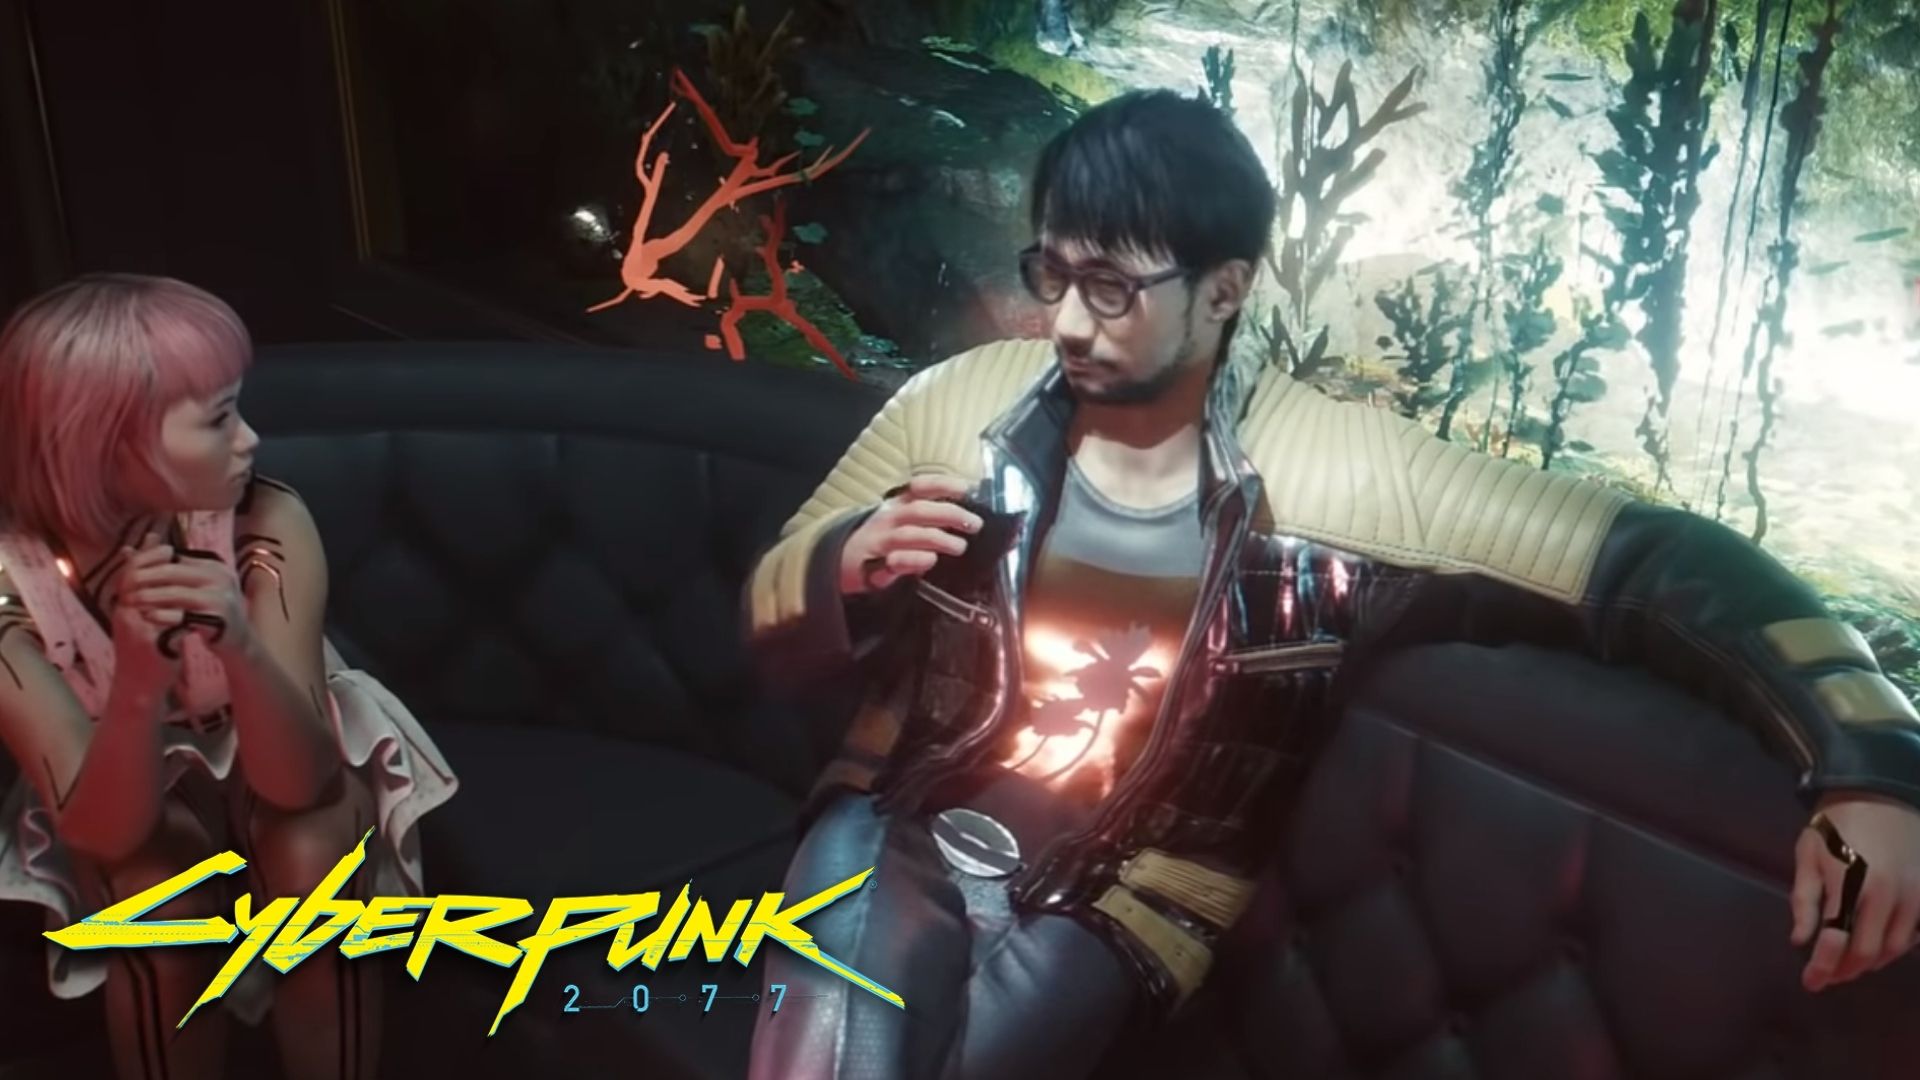 O desenvolvedor de jogos Hideo Kojima foi visto caminhando pelas ruas de Night City em Cyberpunk 2077, e os jogadores querem encontra-lo.